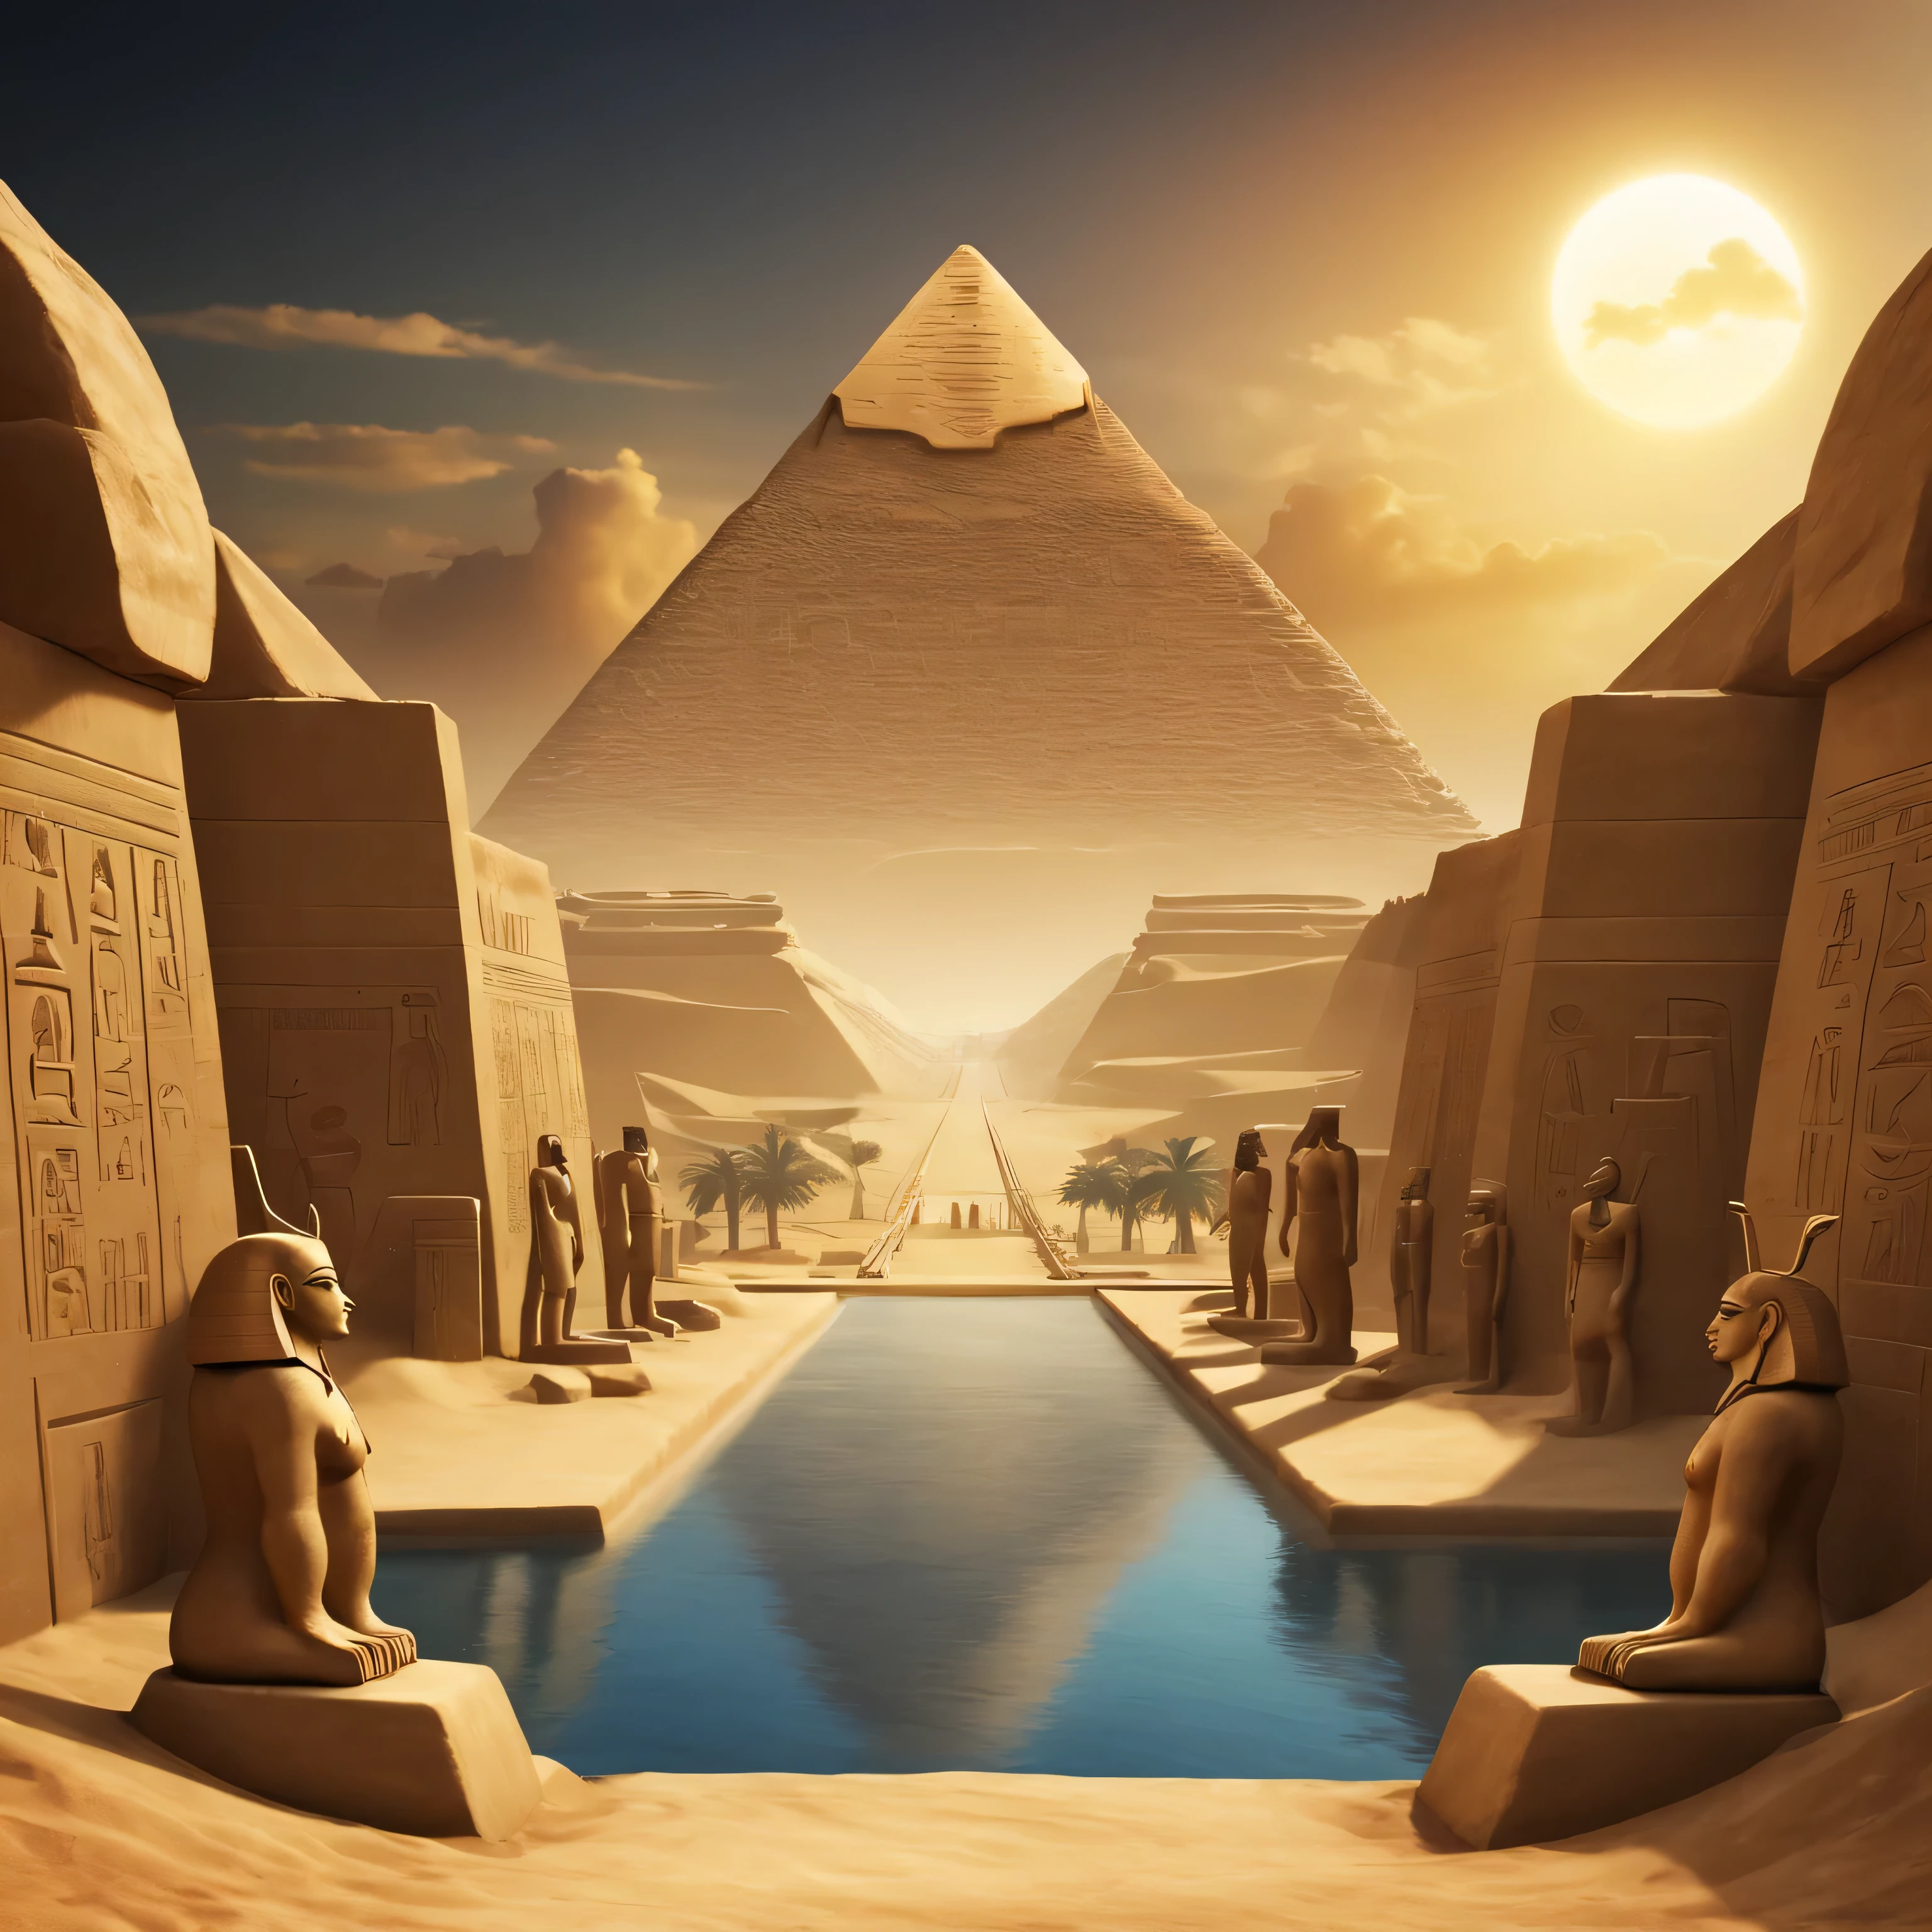 古埃及所有主要神祇均出现在地平线上的景观. 背景和边缘应使用古埃及特有的符号和形状. 至少 4 位神...